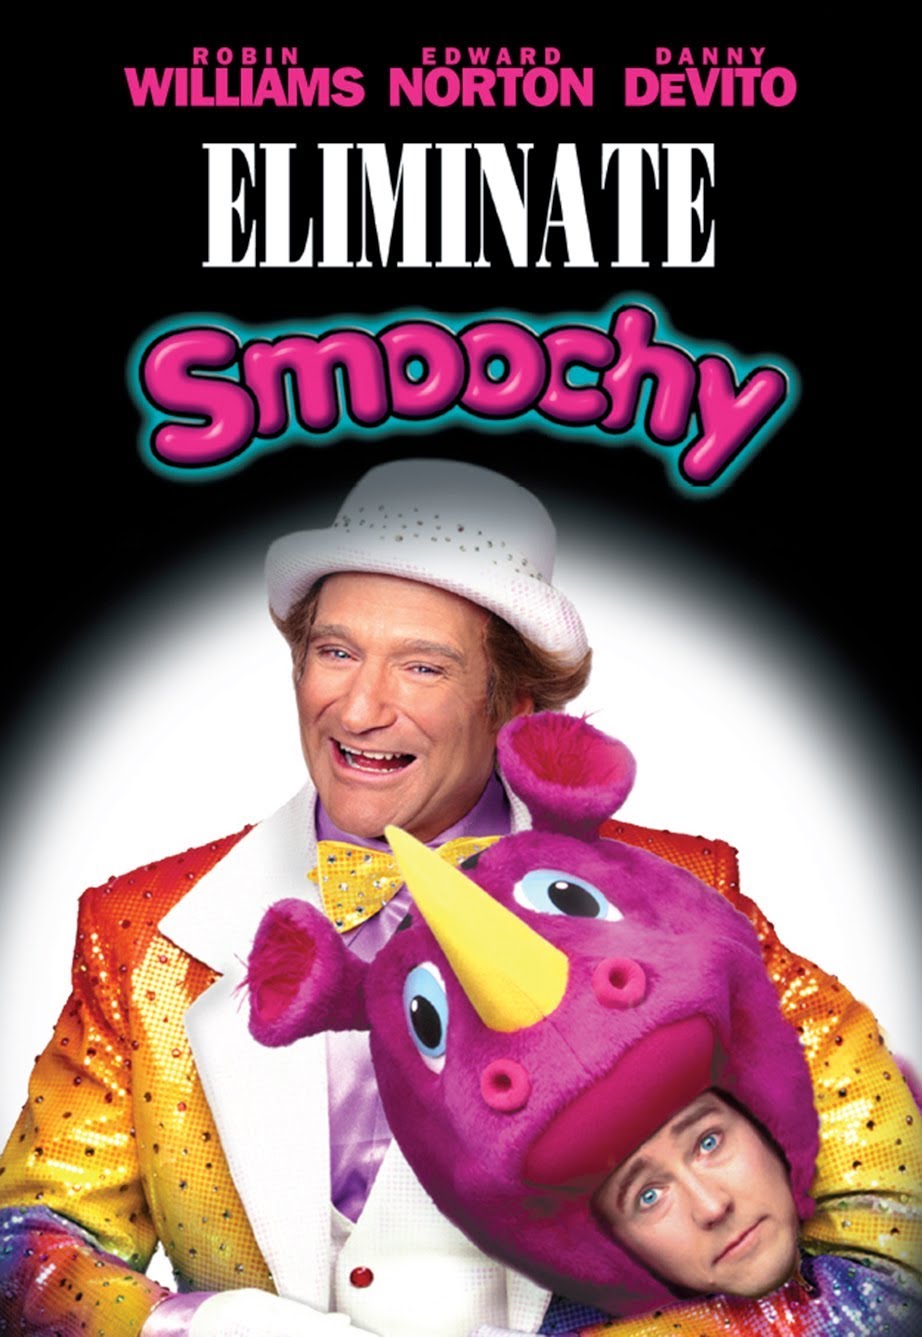 Eliminate Smoochy [HD] (2002)